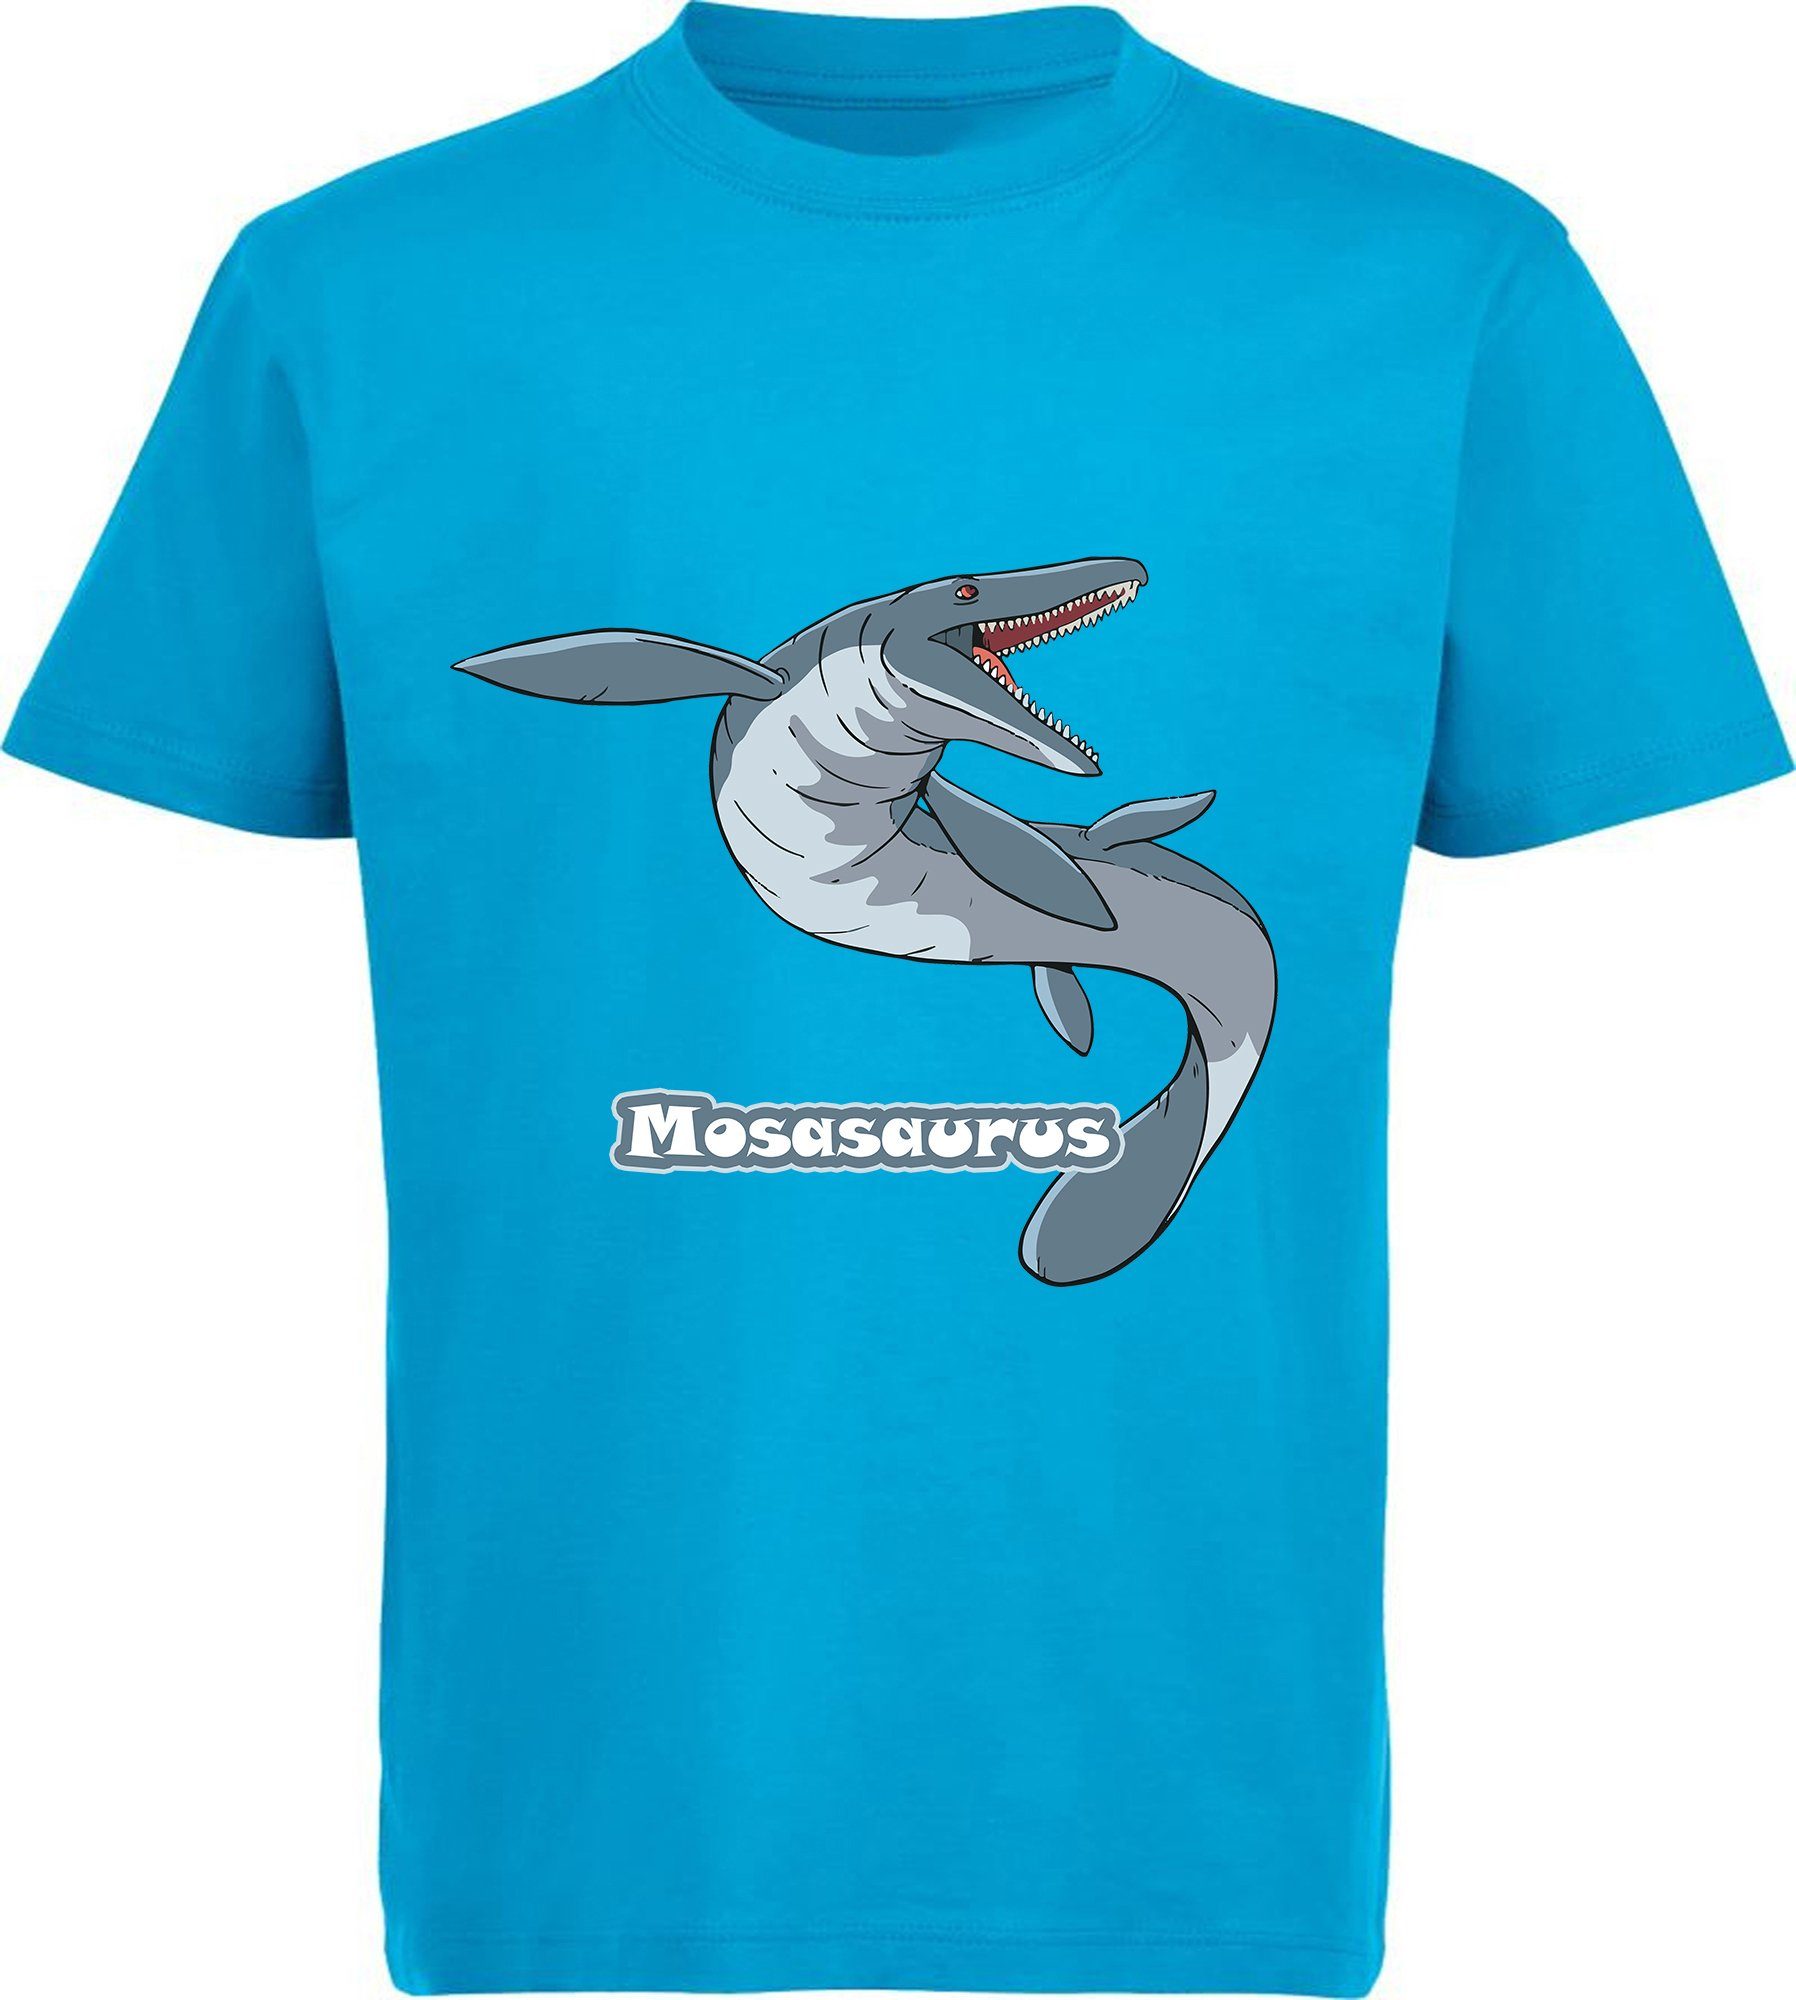 MyDesign24 T-Shirt bedrucktes Kinder T-Shirt mit Mosasaurus 100% Baumwolle mit Dino Aufdruck, aqua blau i51